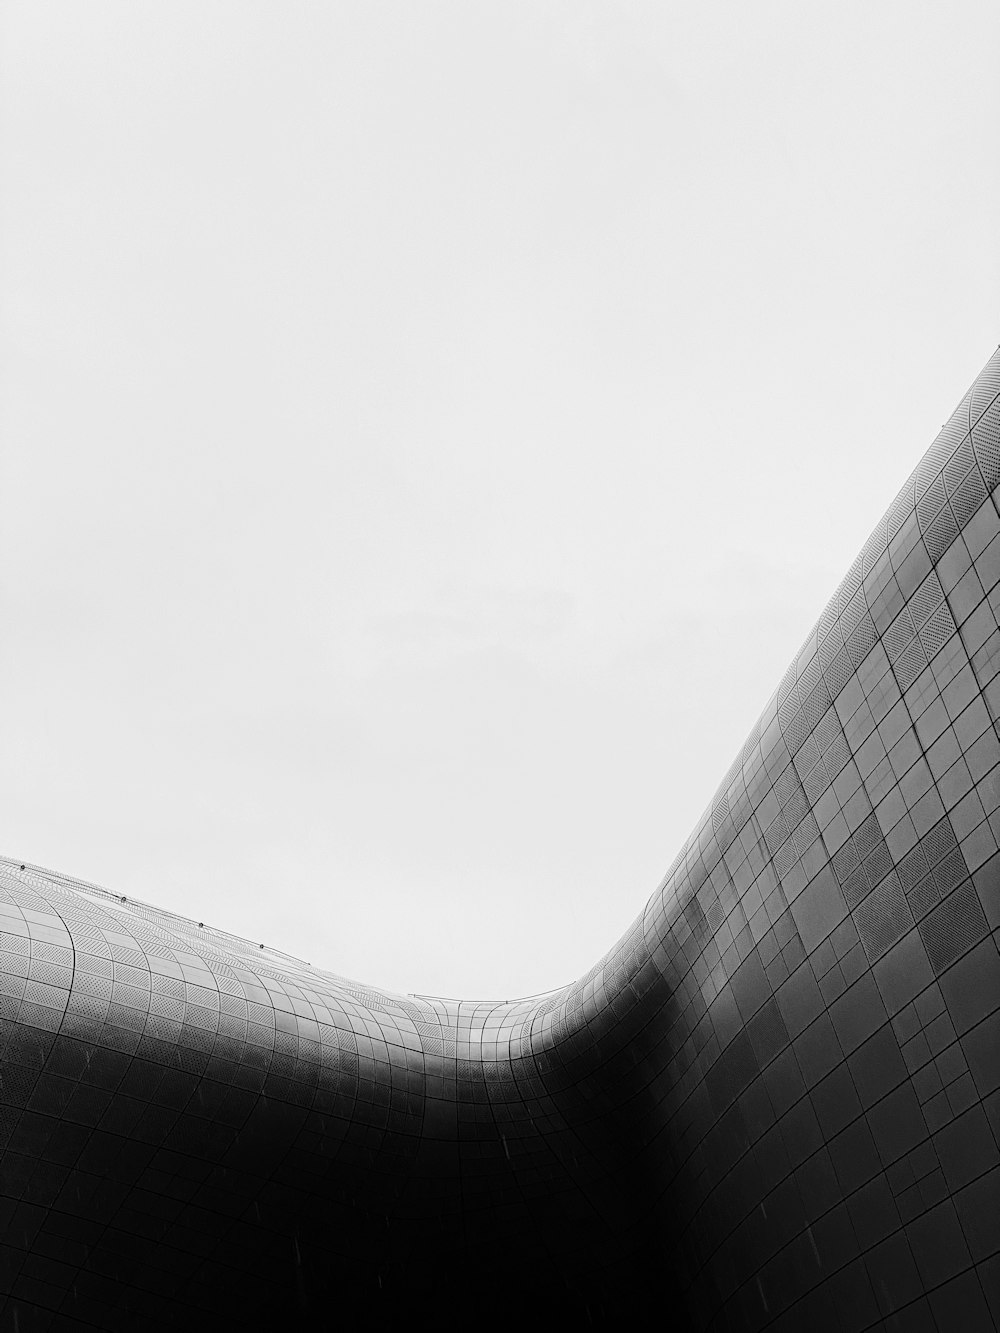 uma foto em preto e branco de um edifício curvo